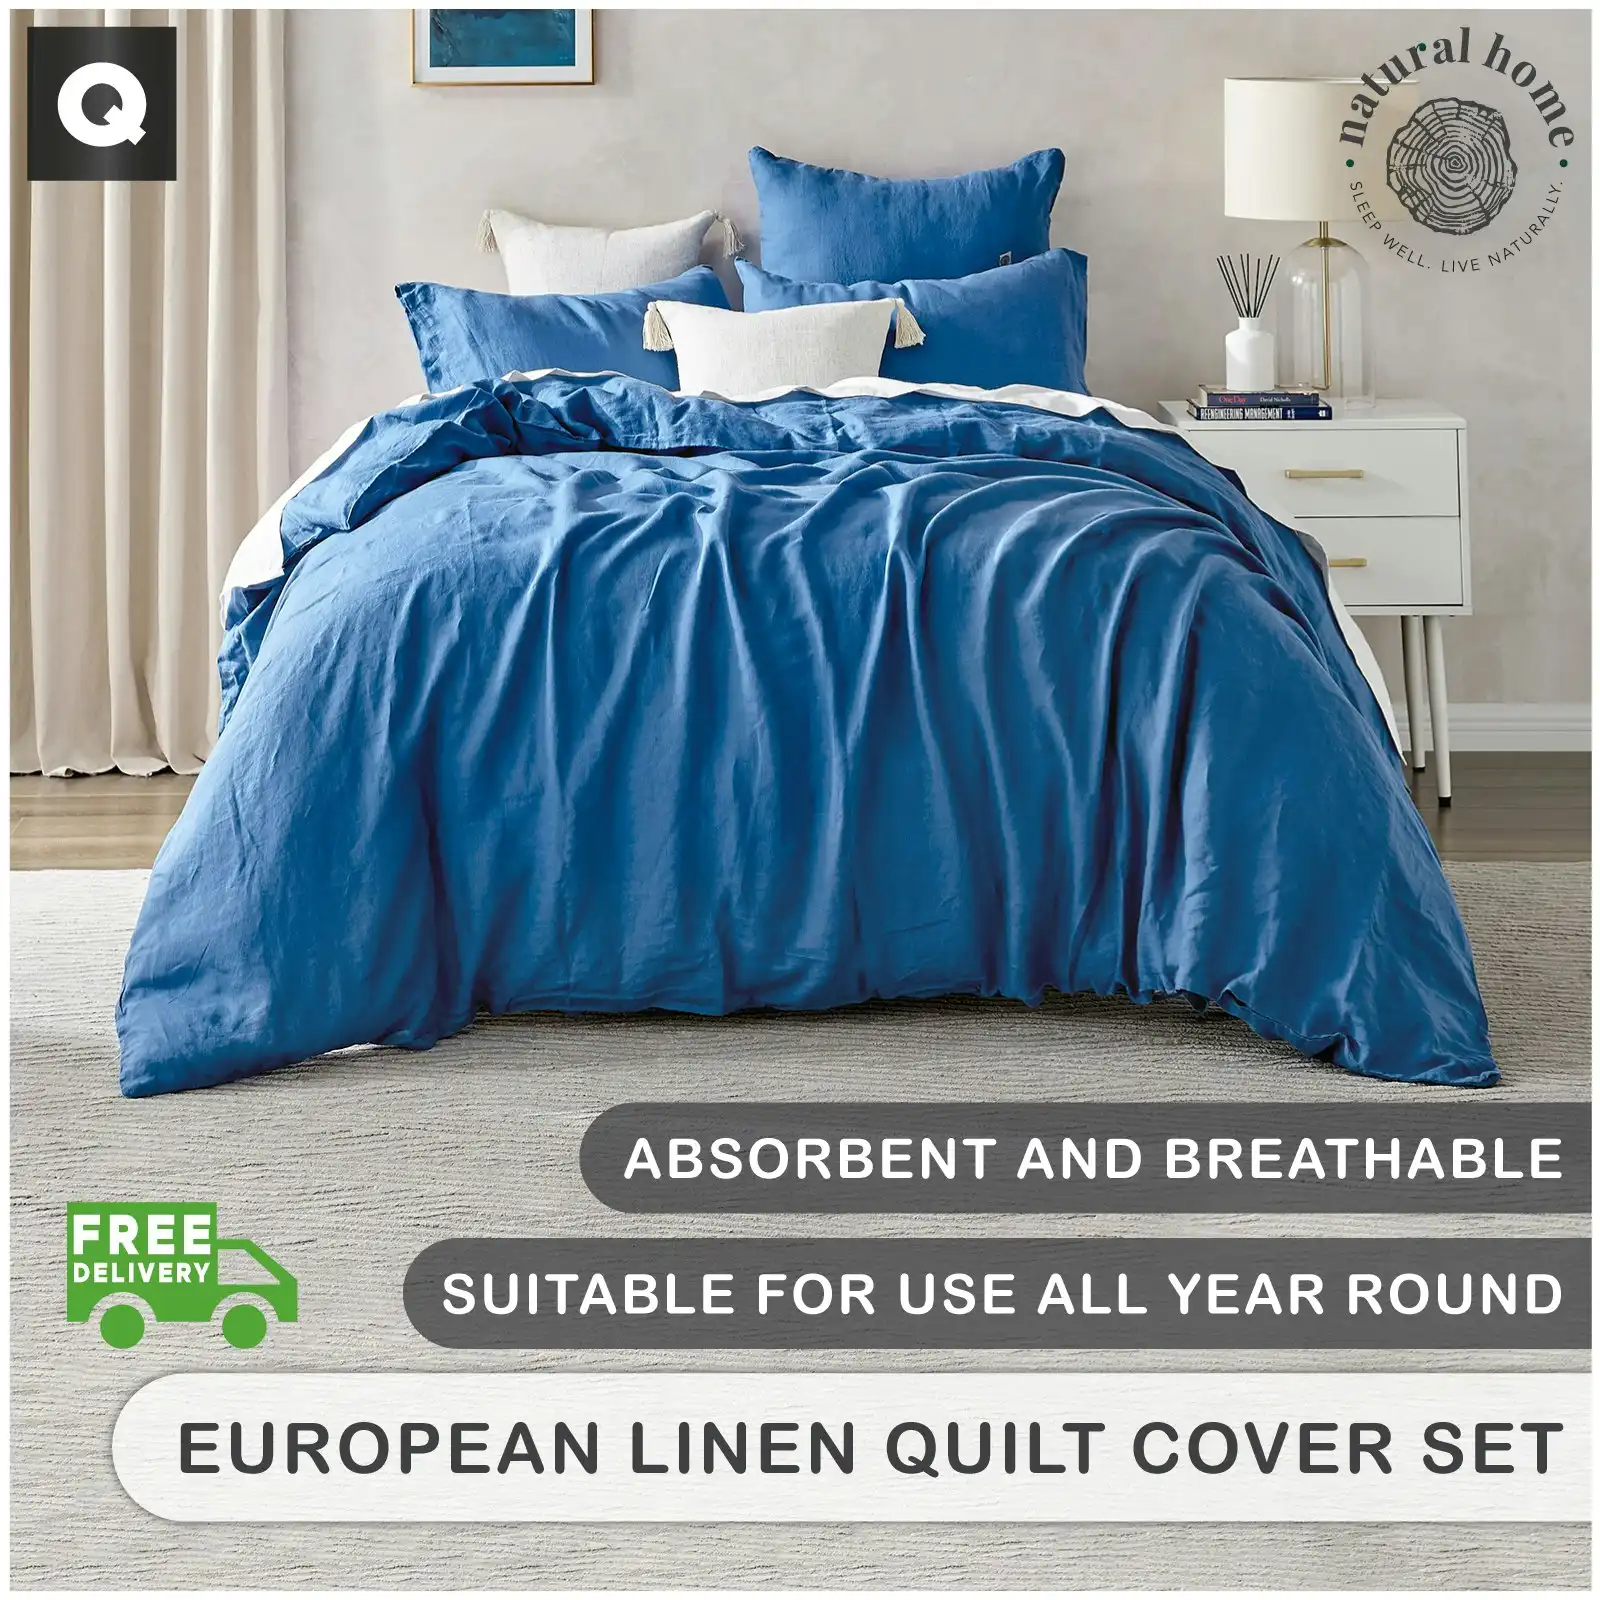 Natural Home Linen 100% European Flax Linen Quilt Cover Set Deep Blue Queen Bed